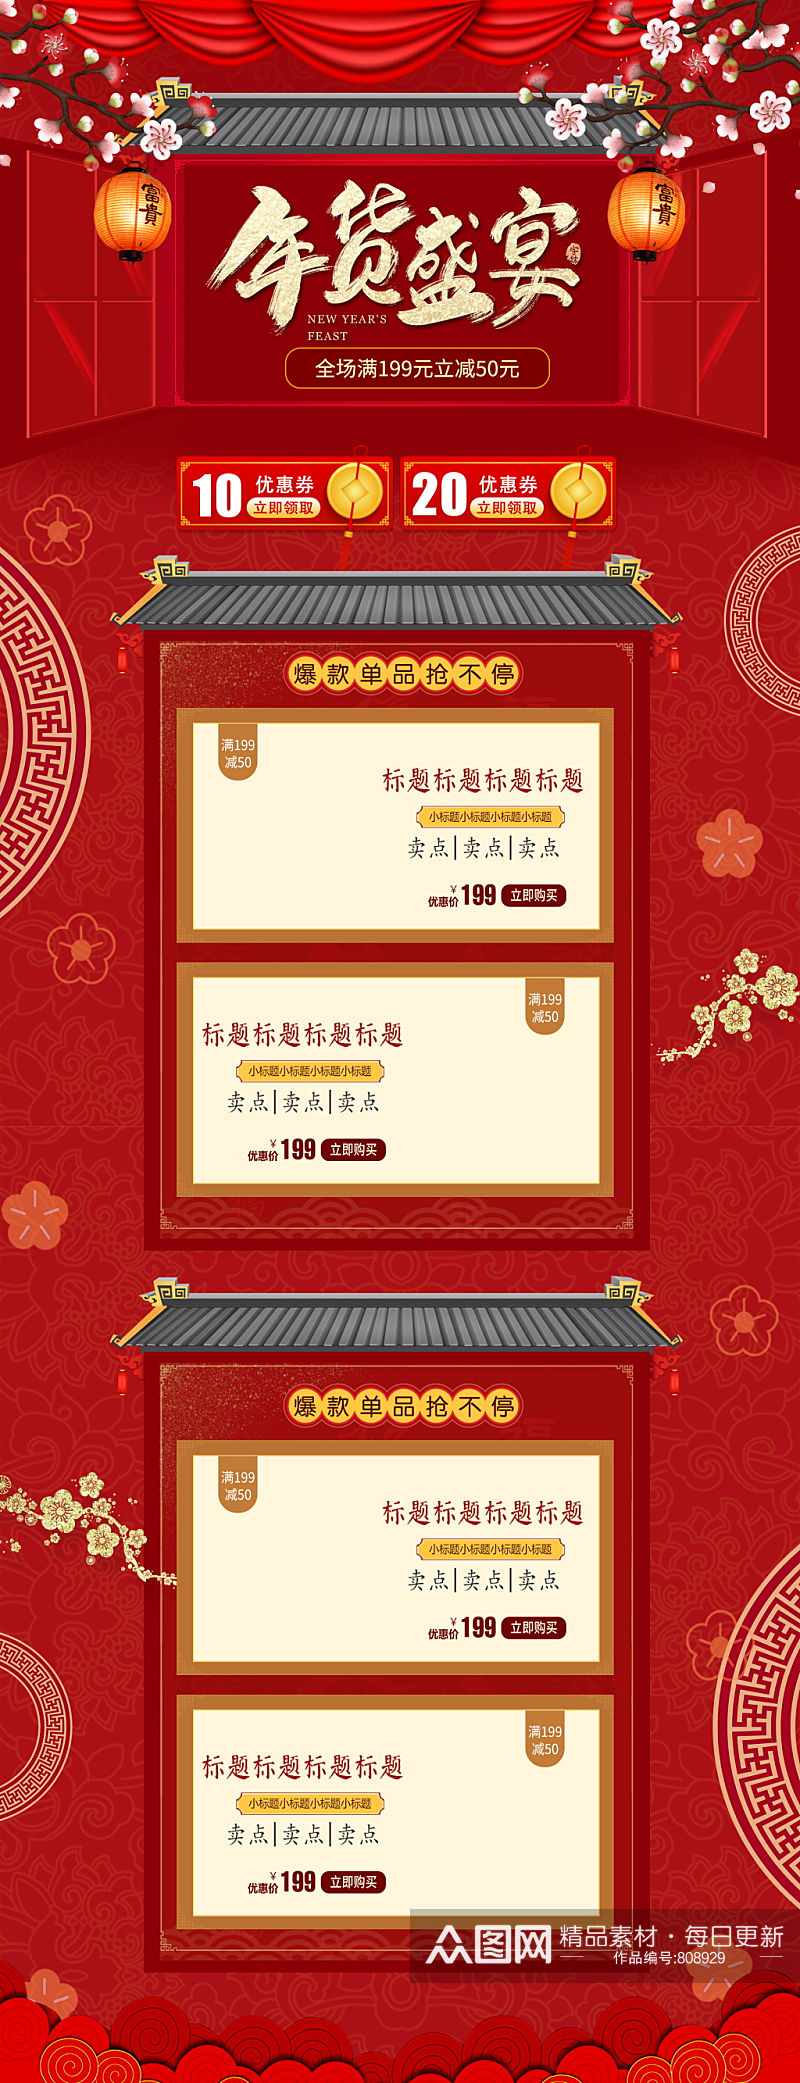 红色喜庆金色字体年货节活动淘宝首页模板素材